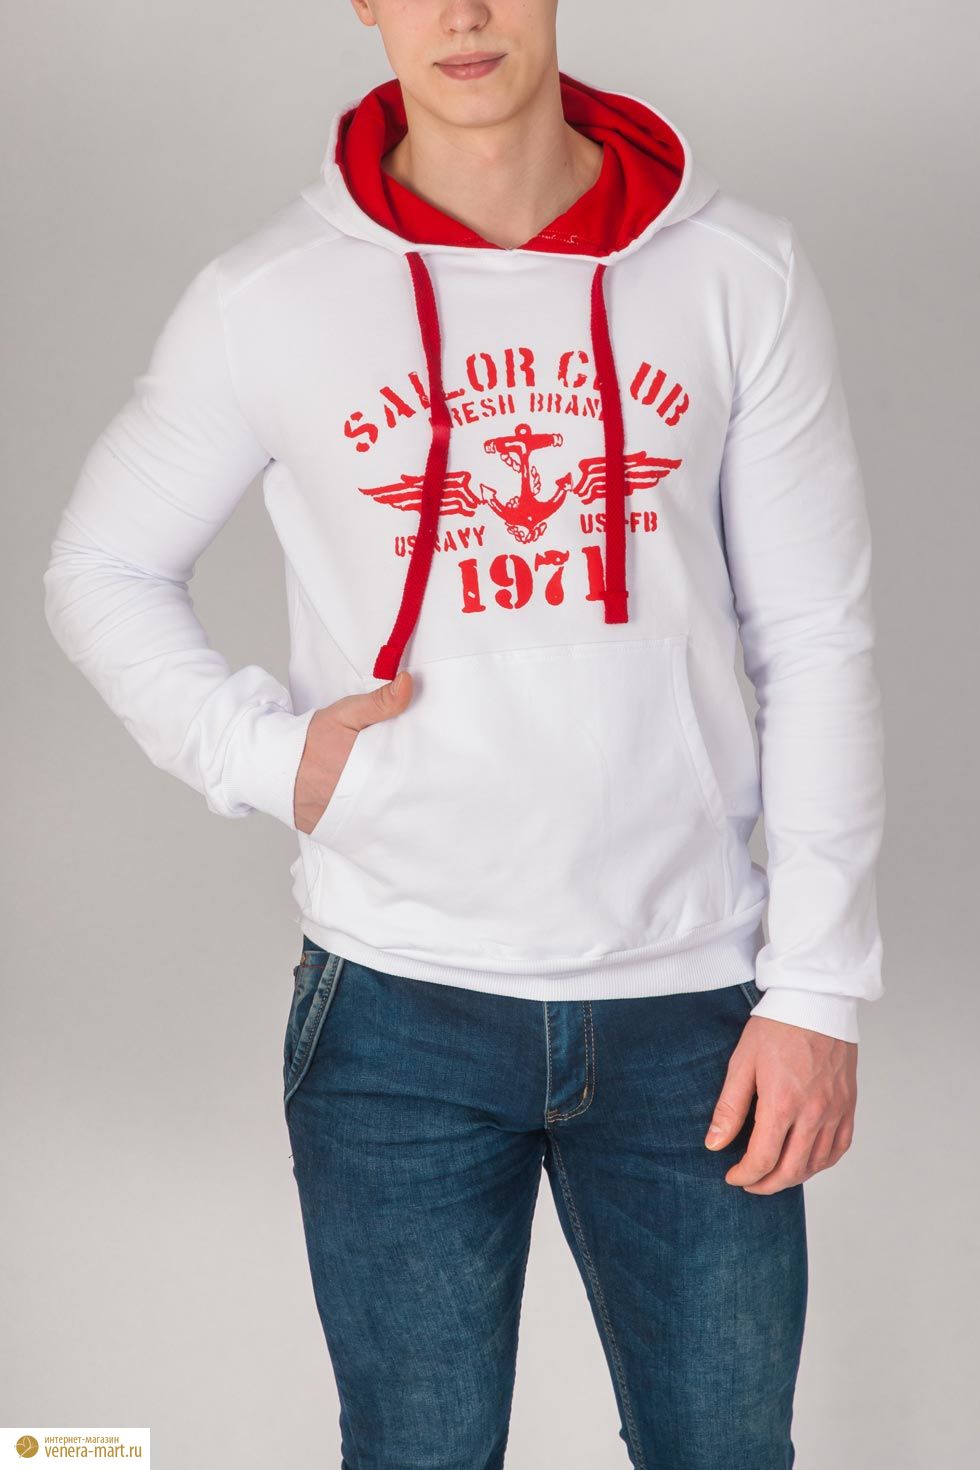 Анорак мужской "Sailor Club" с капюшоном